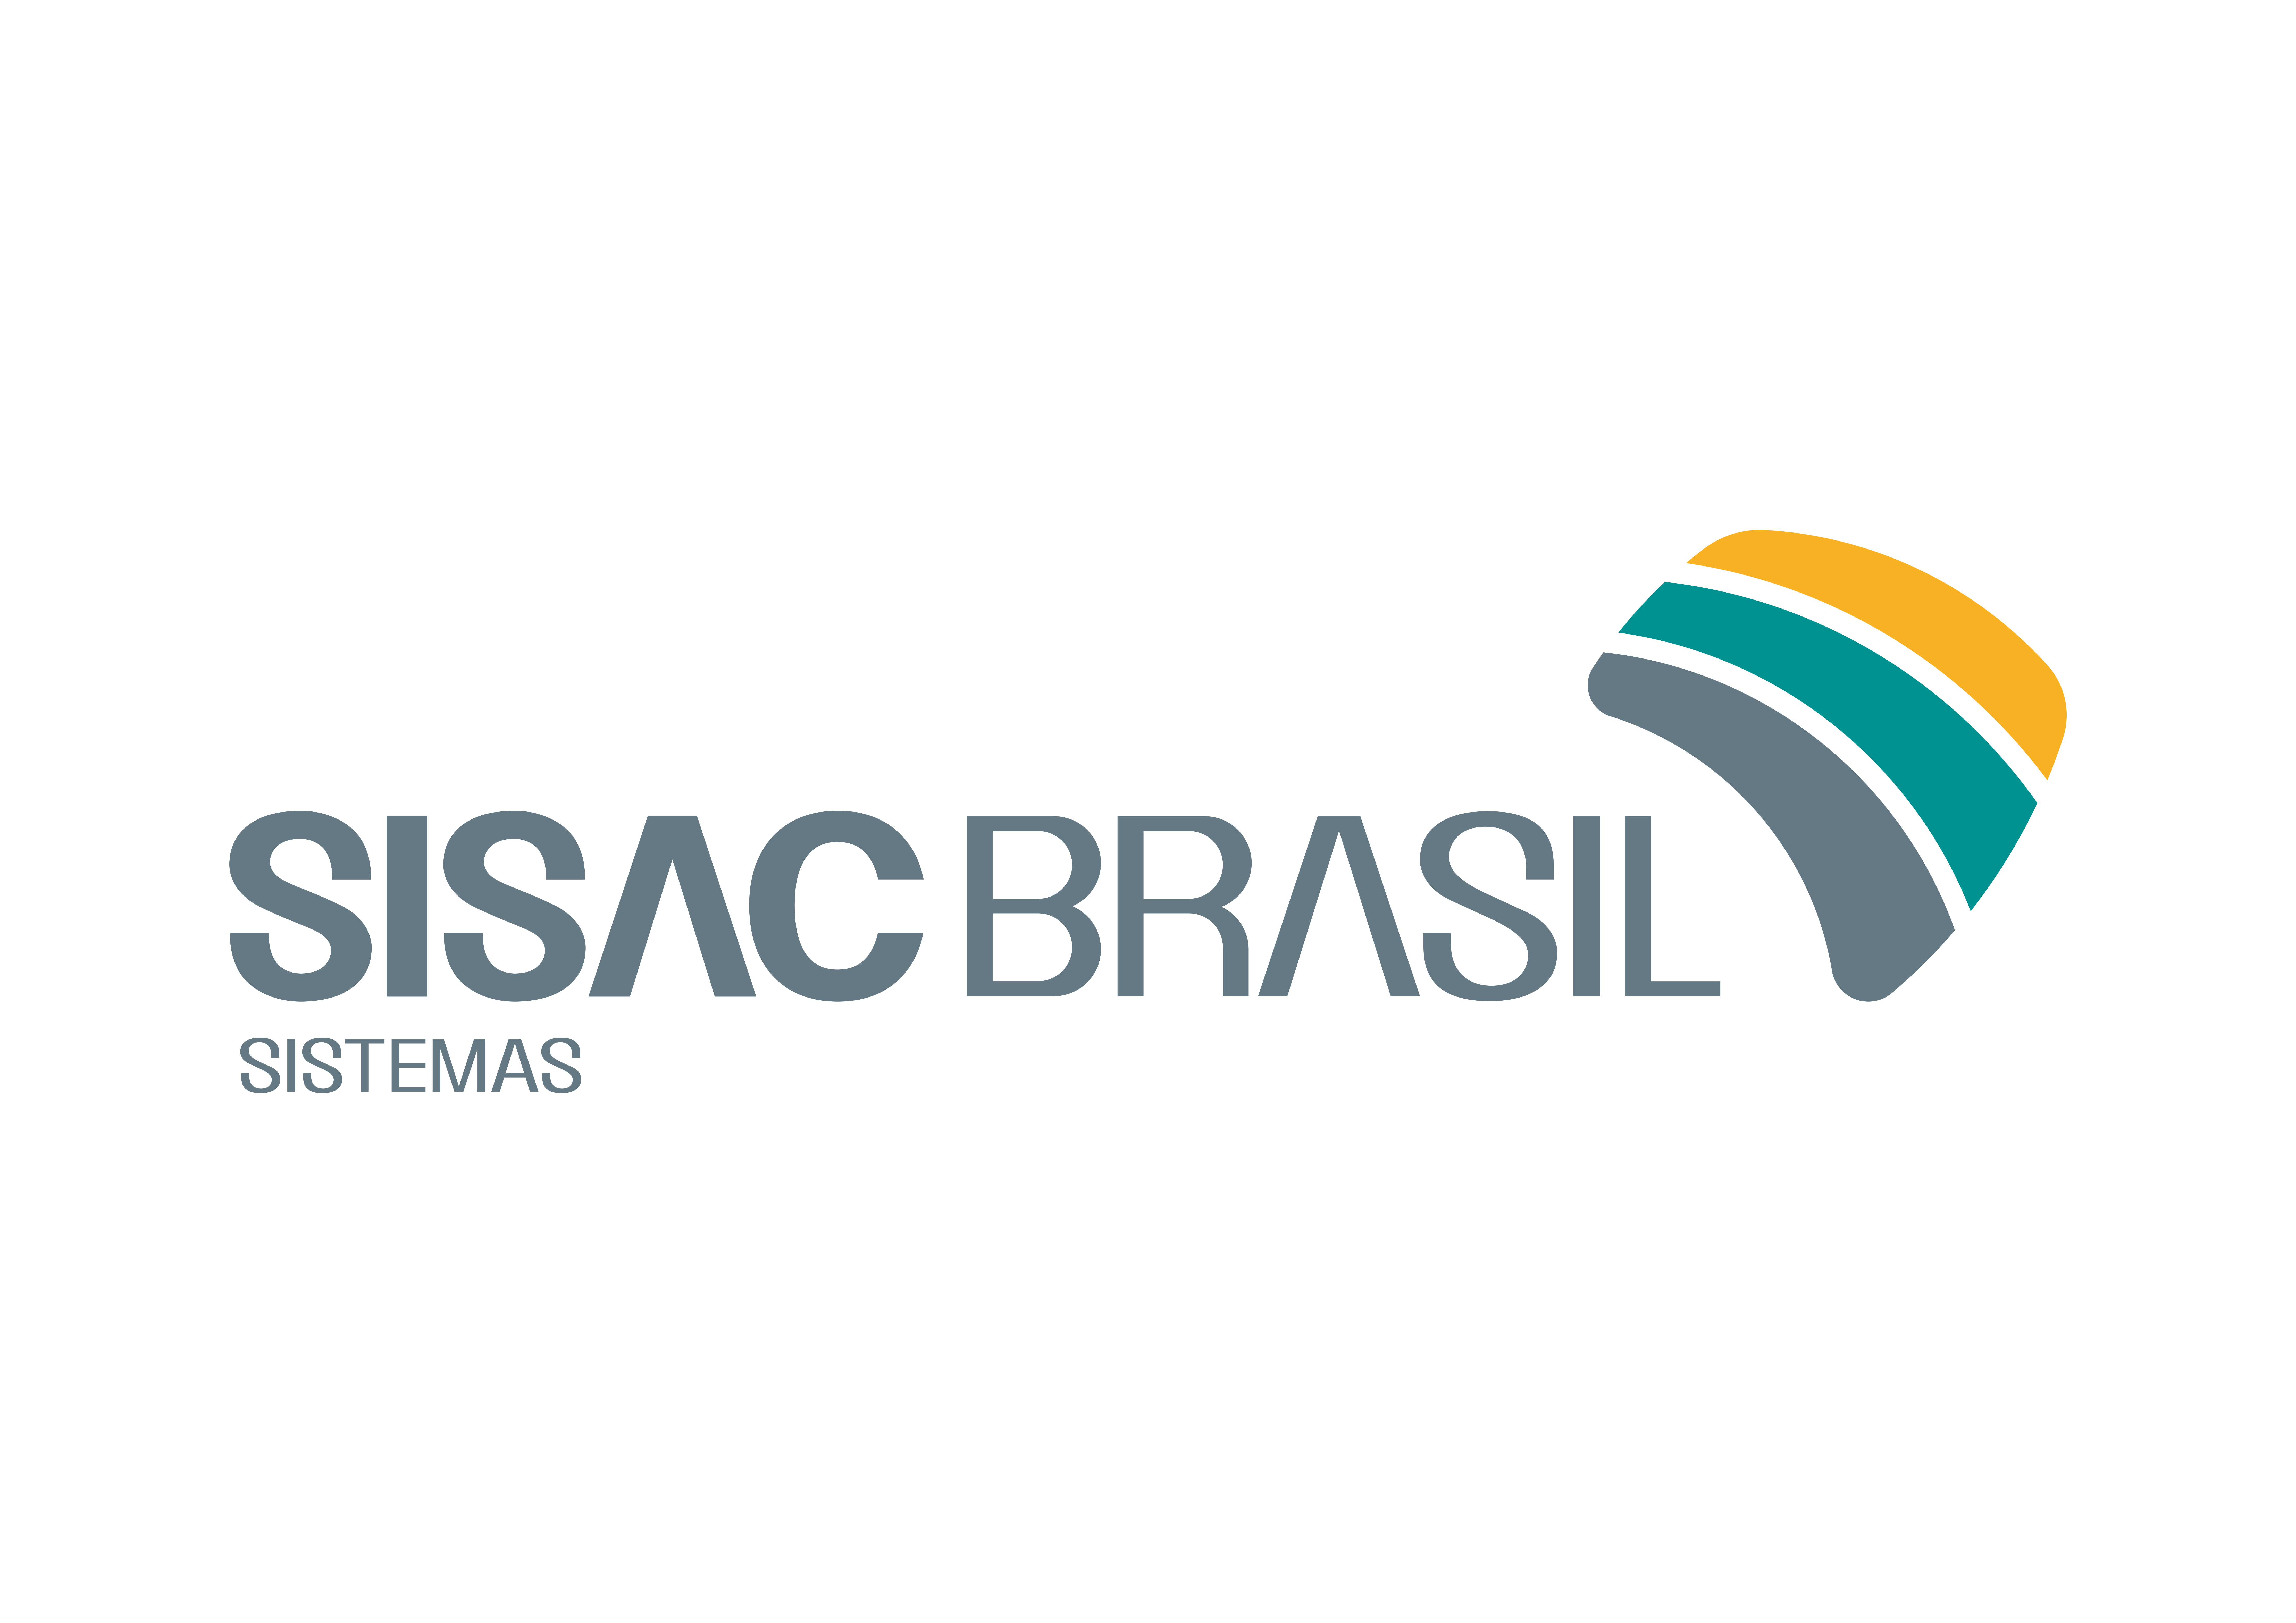 logo_sisac_brasil_sistemas_horizontal_opcao_01.png